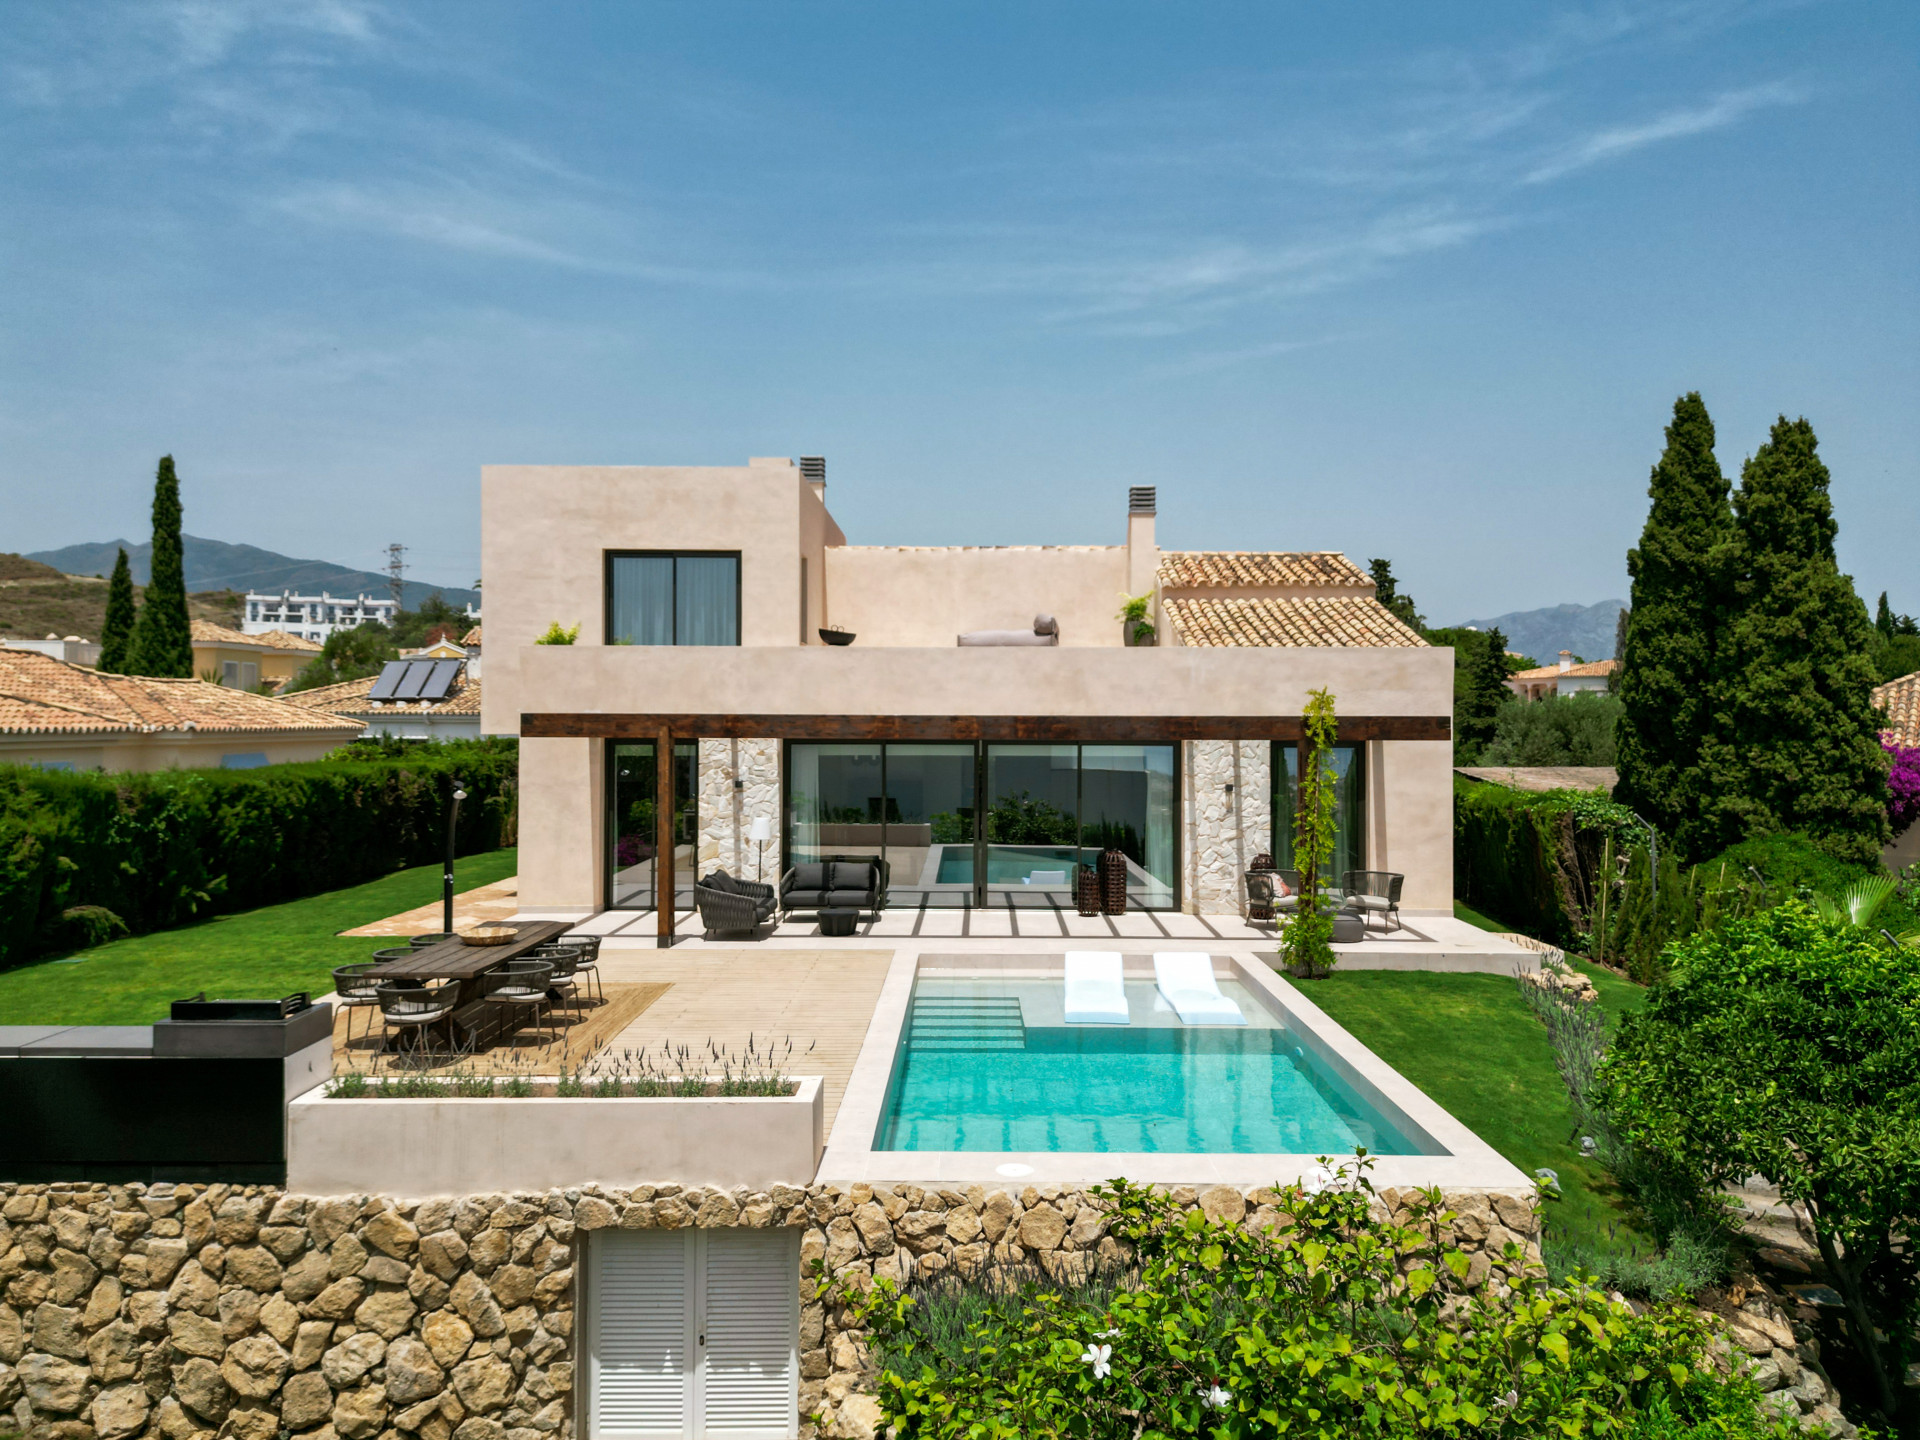 Private villa inspired by Ibizan architecture